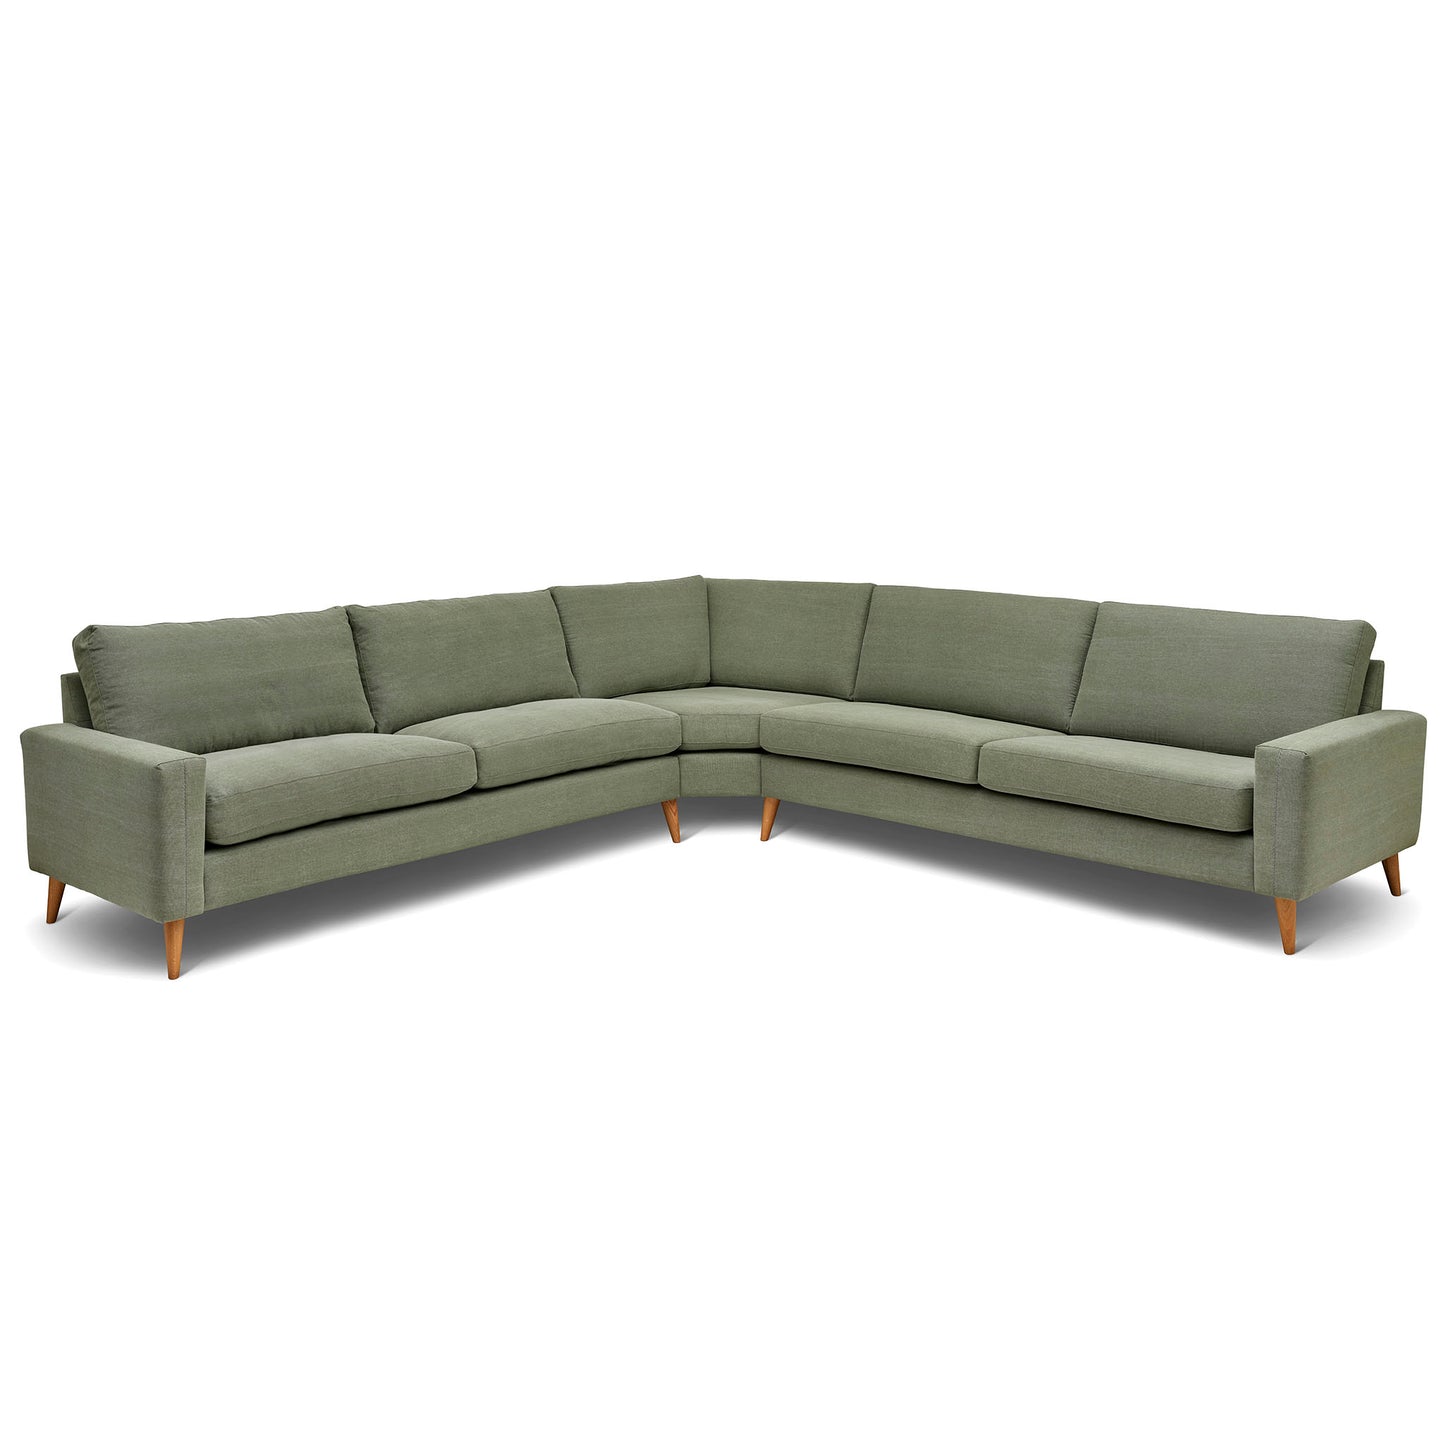 Stor kvadratisk hörnsoffa med måttet 321x321 cm. Sittvänlig soffa för äldre i grågrönt tyg